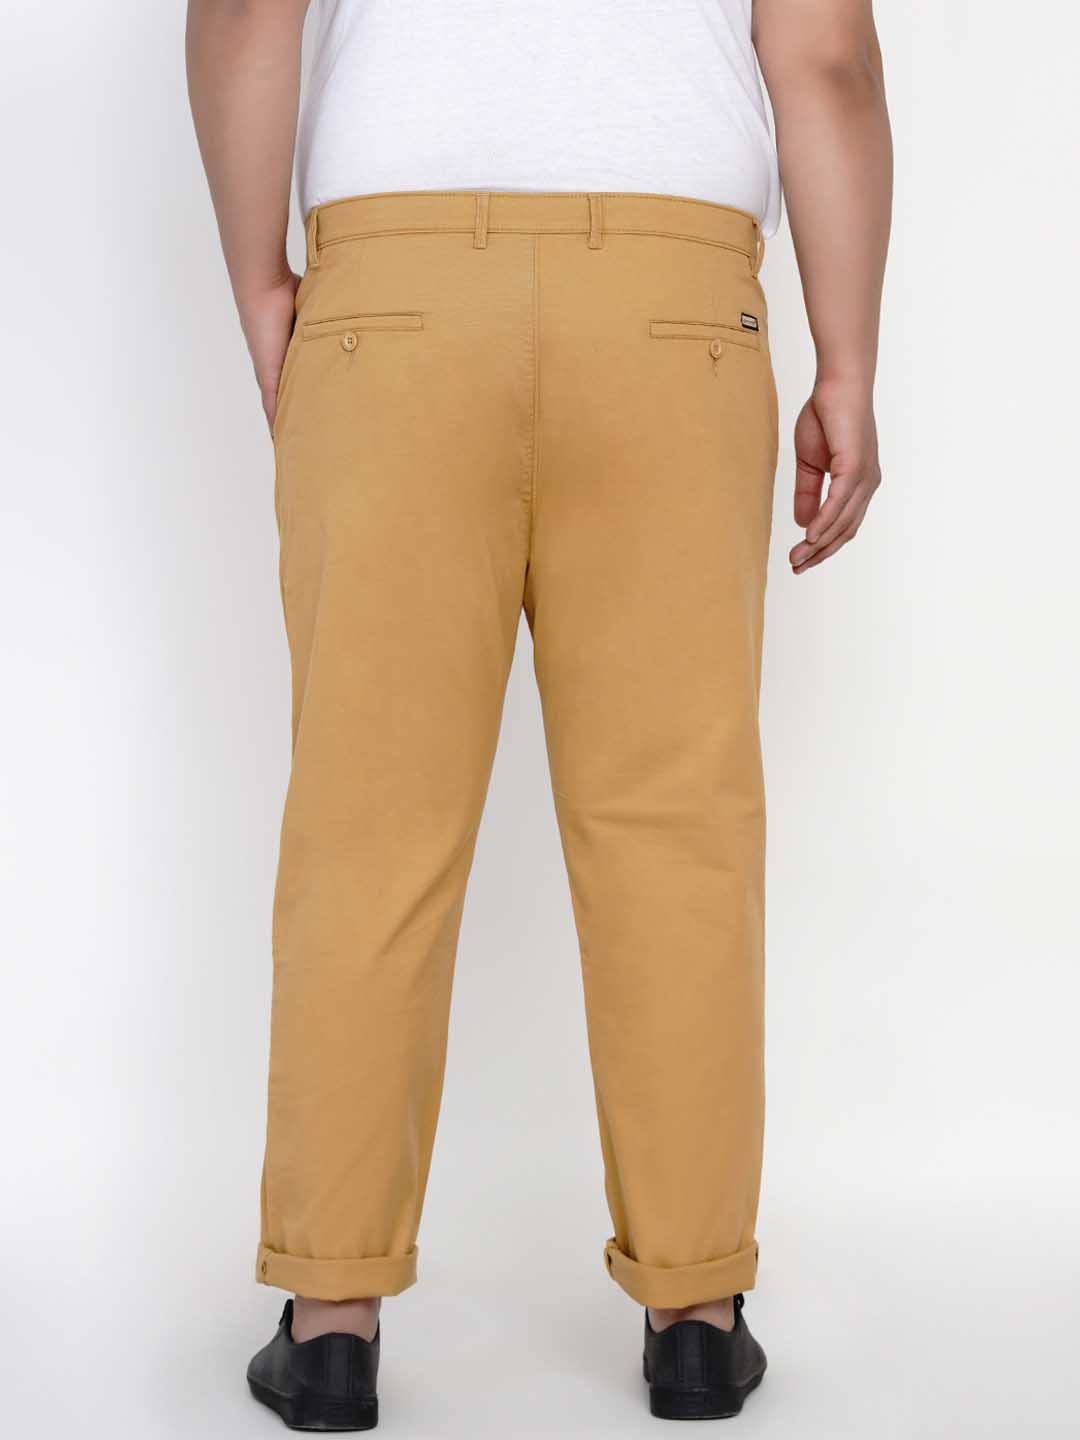 bottomwear/trousers/JPTR2195A/jptr2195a-4.jpg